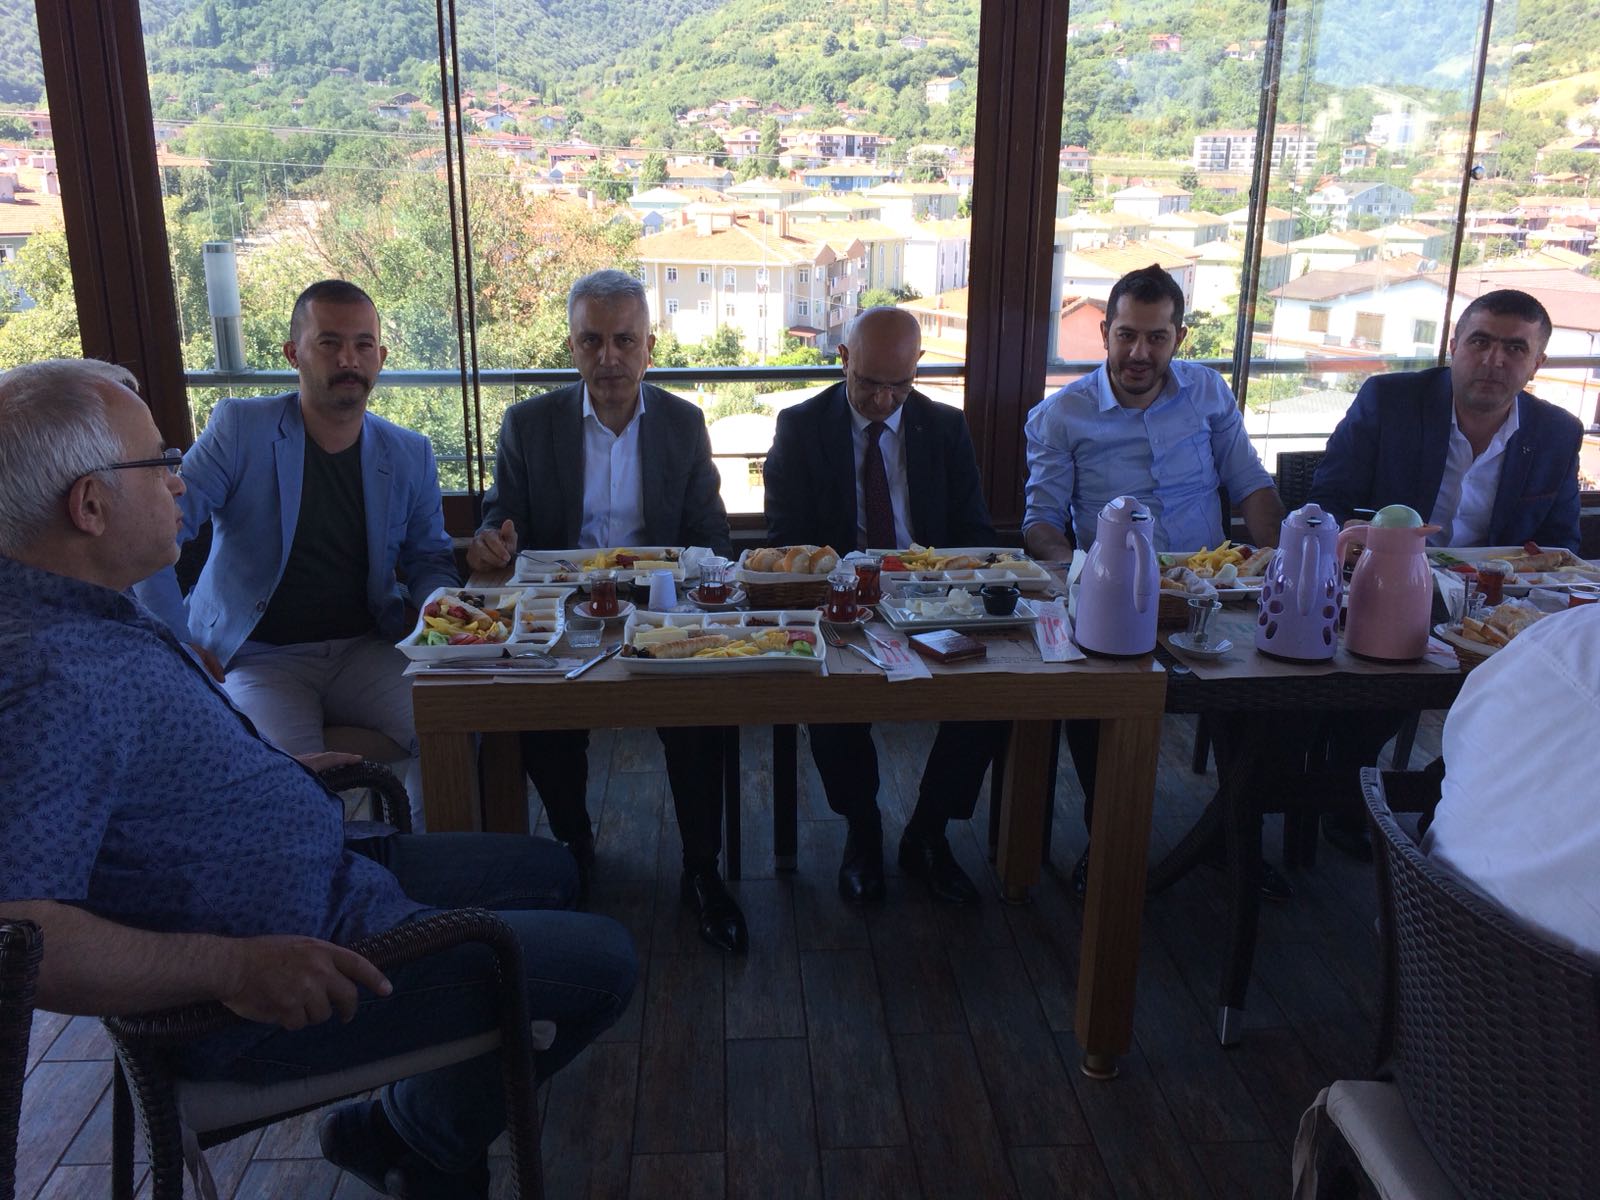 MHP 27. Dönem milletvekili adayı İbrahim İnanç Çakıroğlu’ndan basın mensuplarına teşekkür kahvaltısı